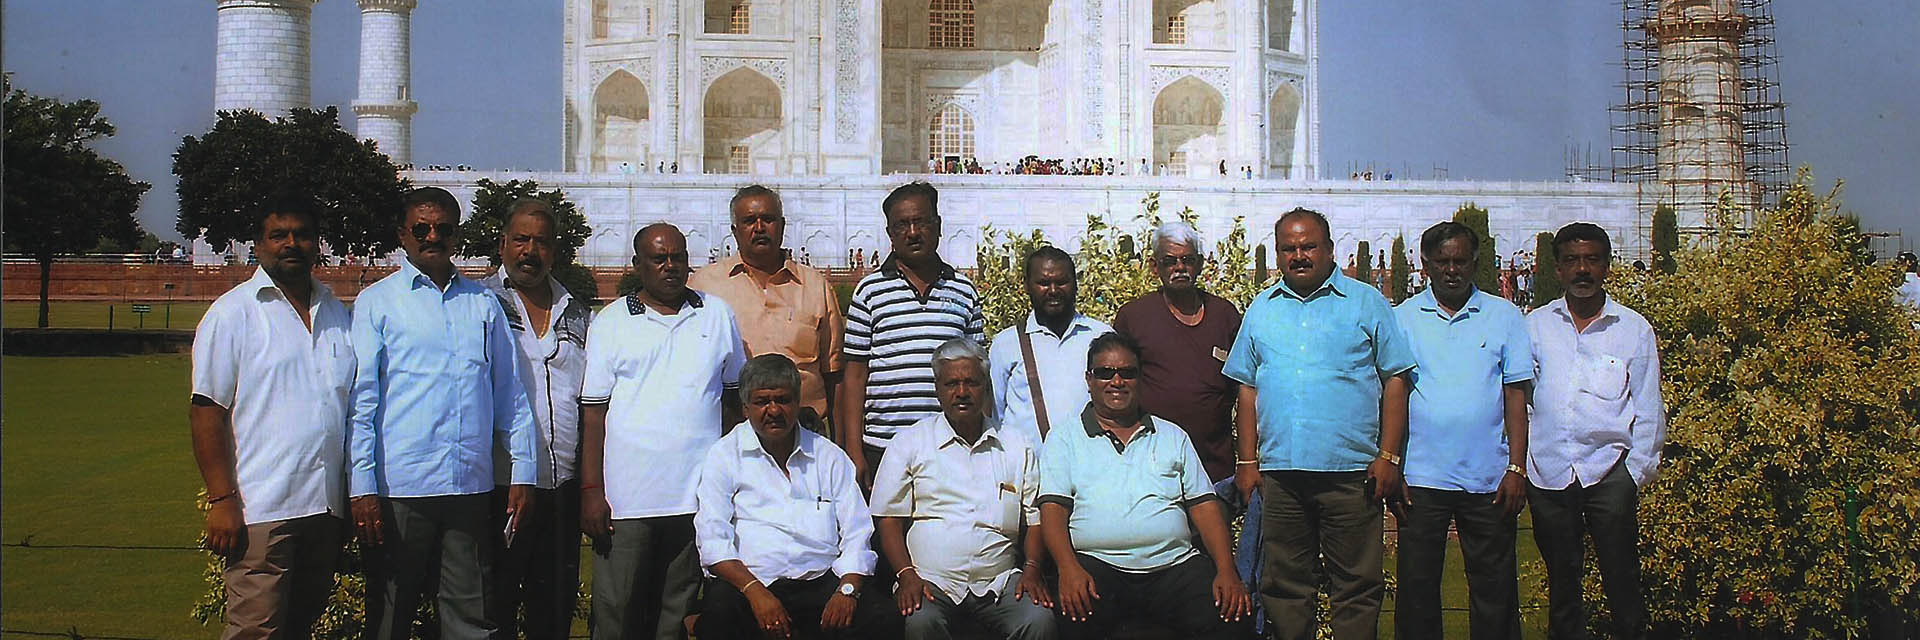 Tour Operators in India